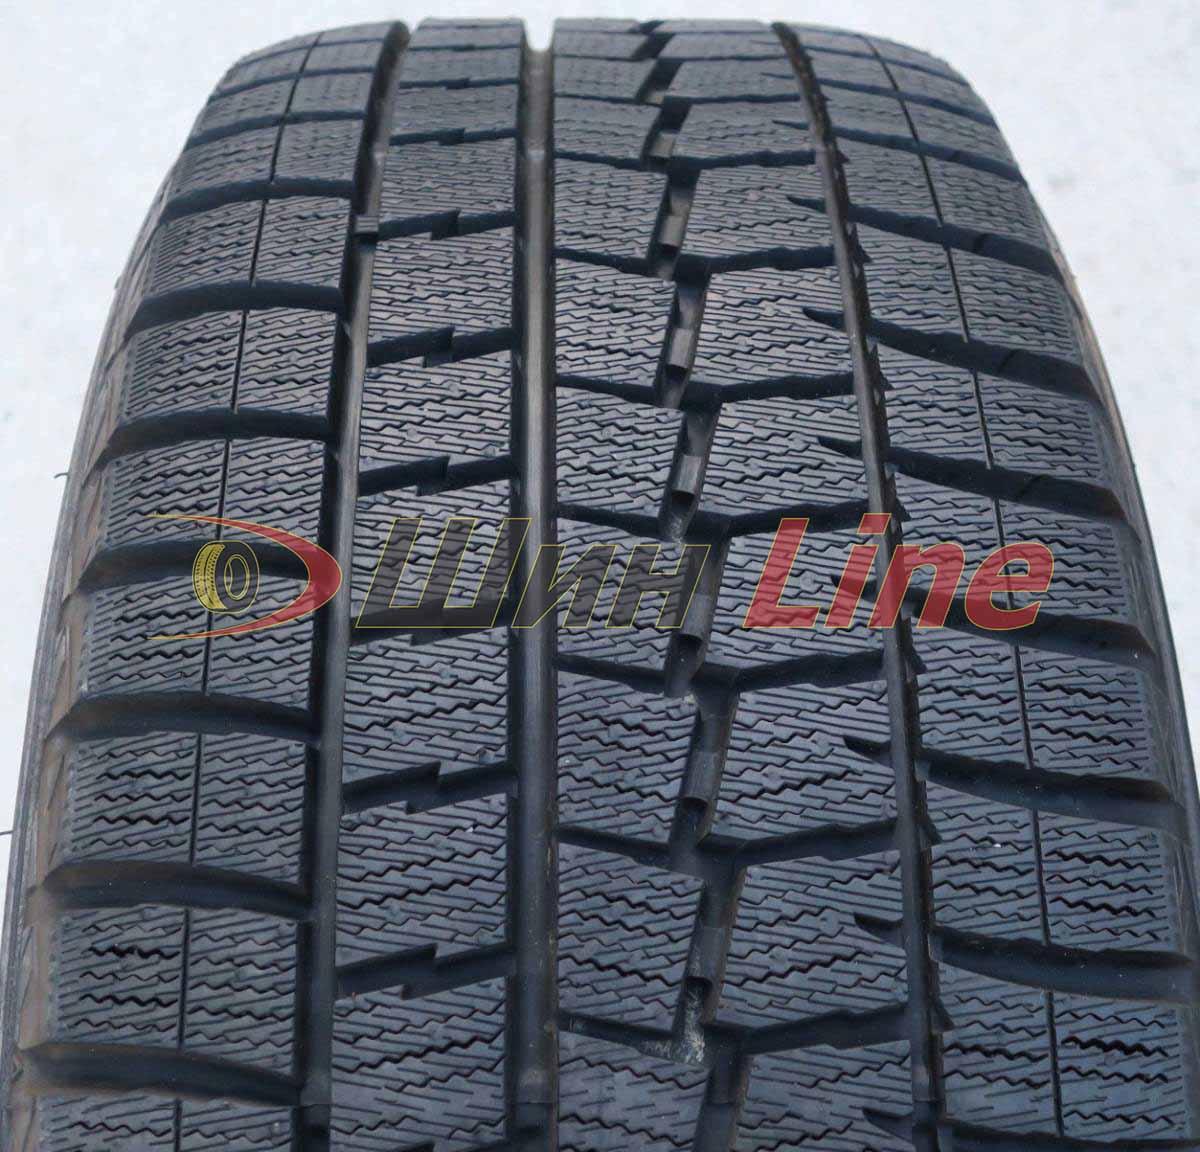 Легковая шина зимняя нешипованная Dunlop Winter Maxx WM01 235/50 R18 101T , фото 2